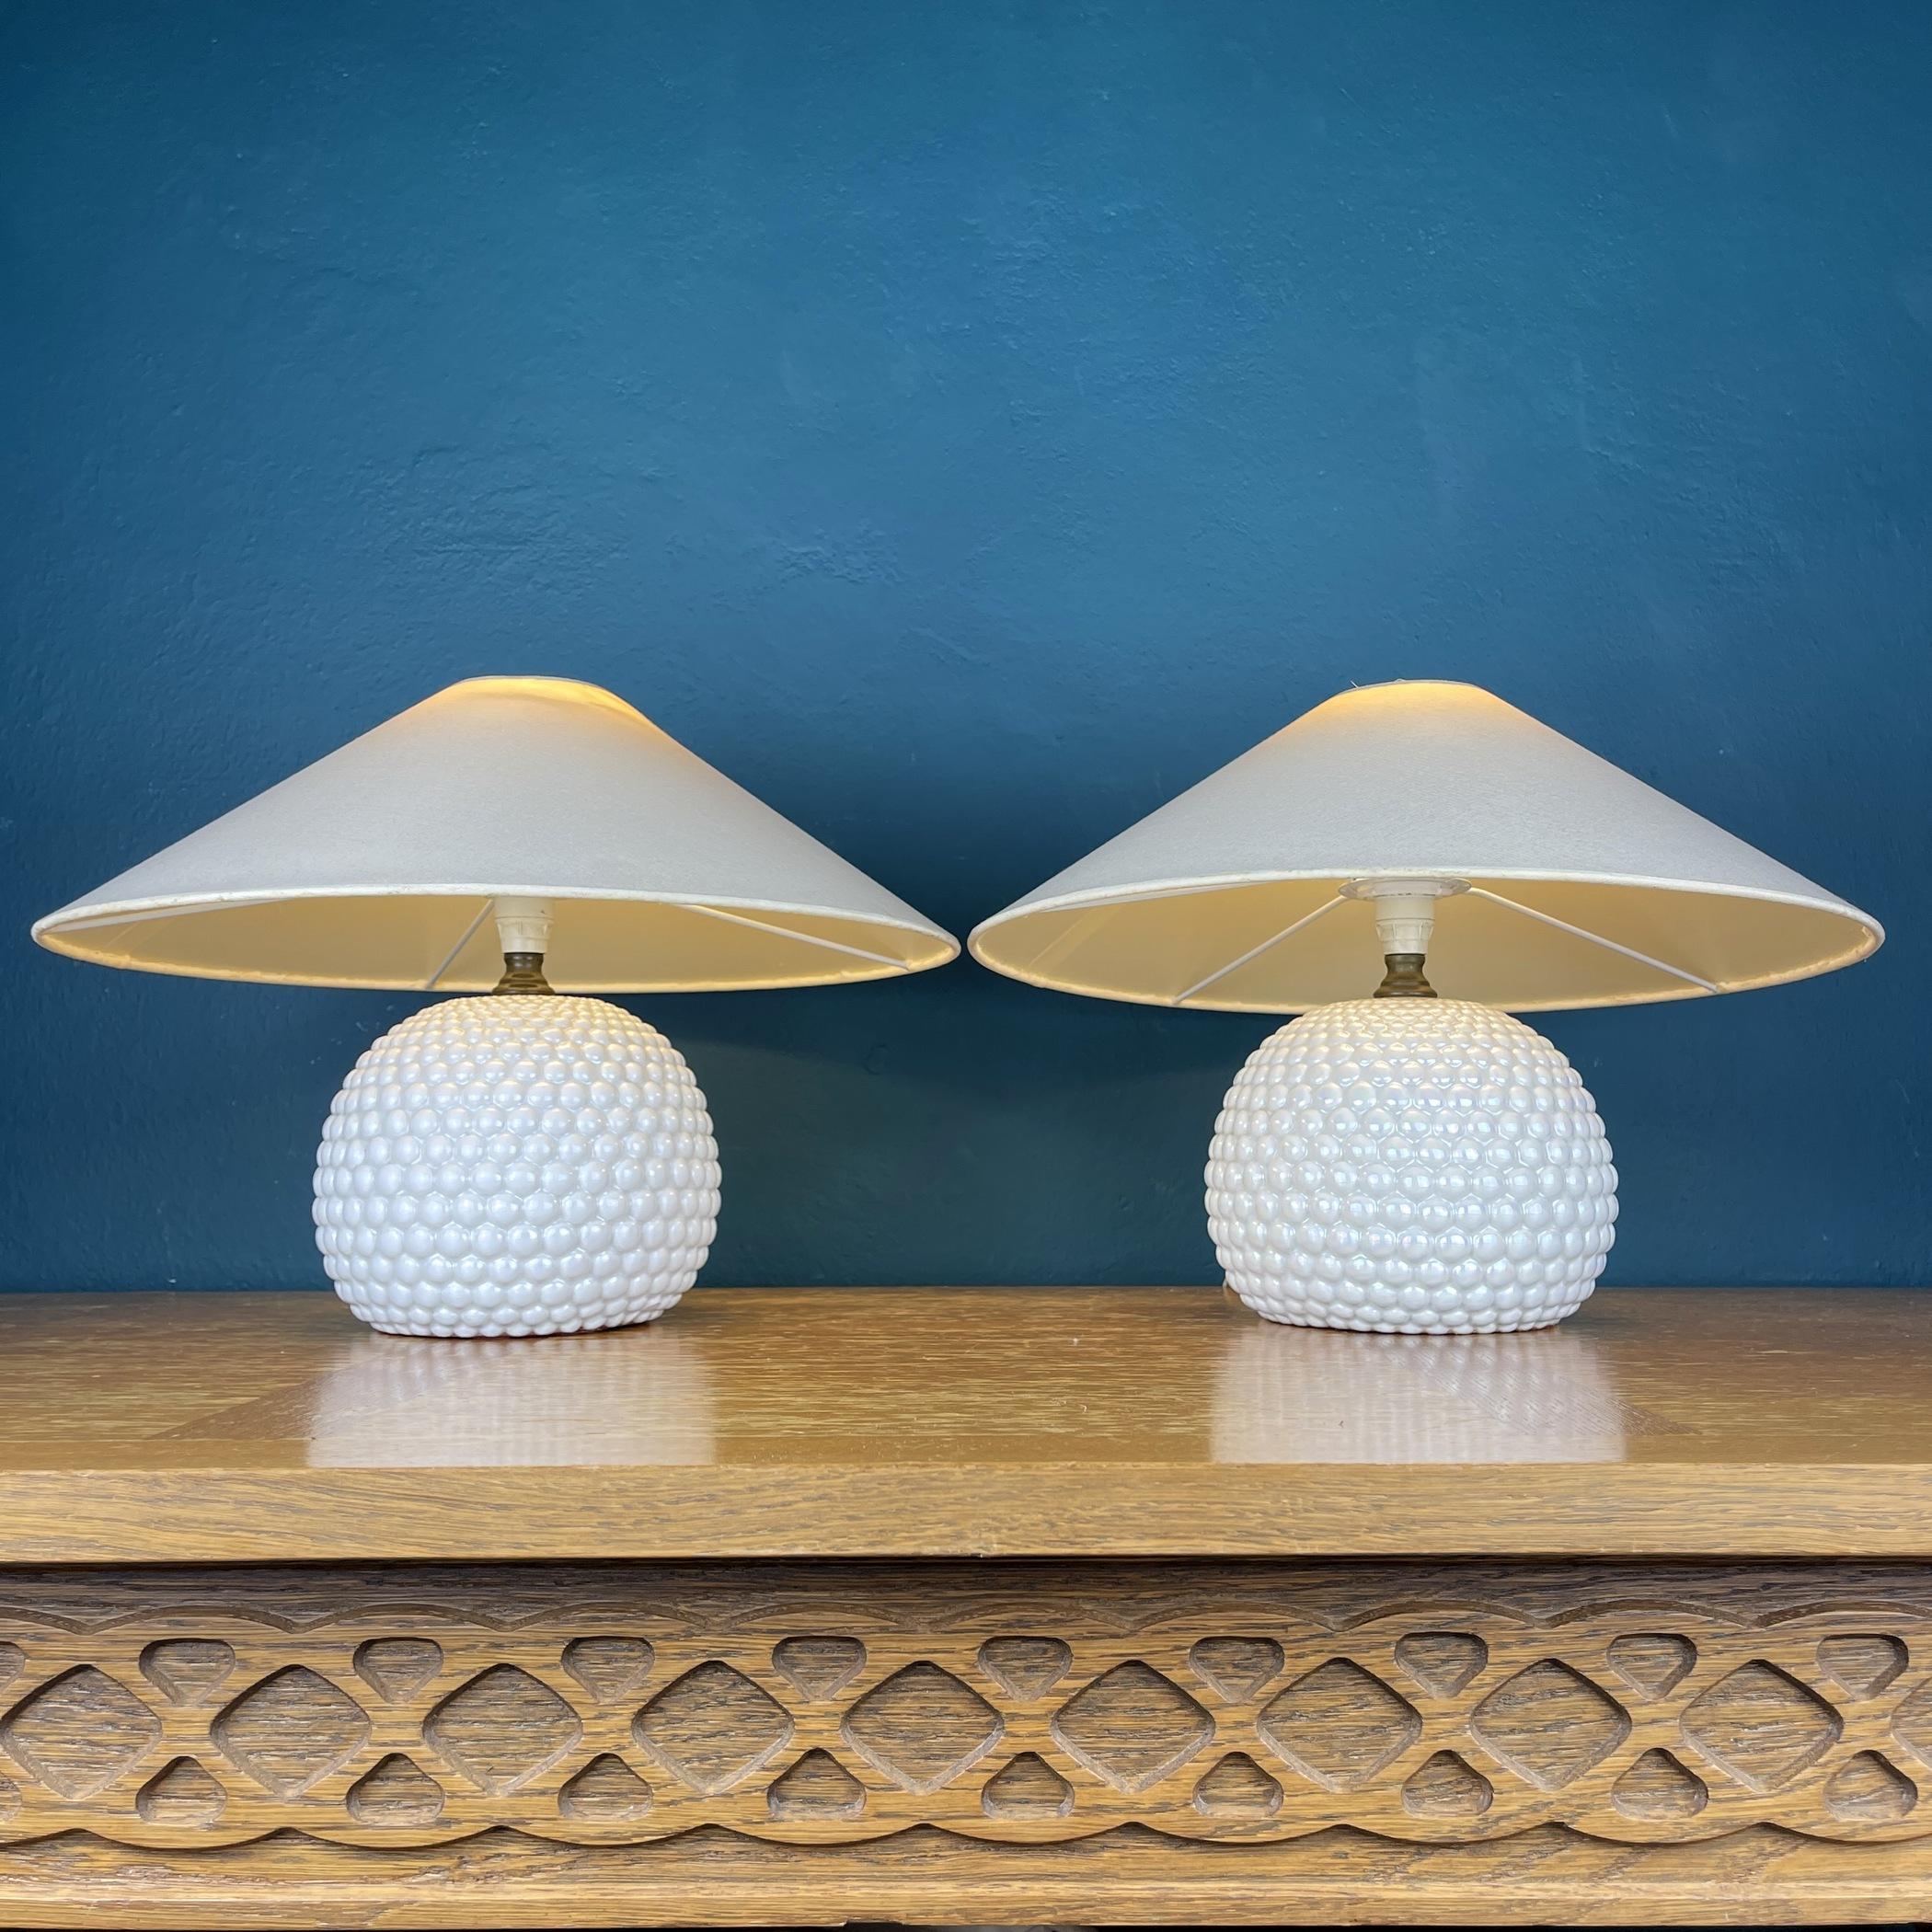 Cette paire de belles lampes rétro en nacre a été fabriquée en Italie dans les années 1970. La lampe porte le logo de l'auteur. La lumière douce créera du confort dans votre chambre à coucher, votre chambre d'enfant ou votre salon. Très bon état